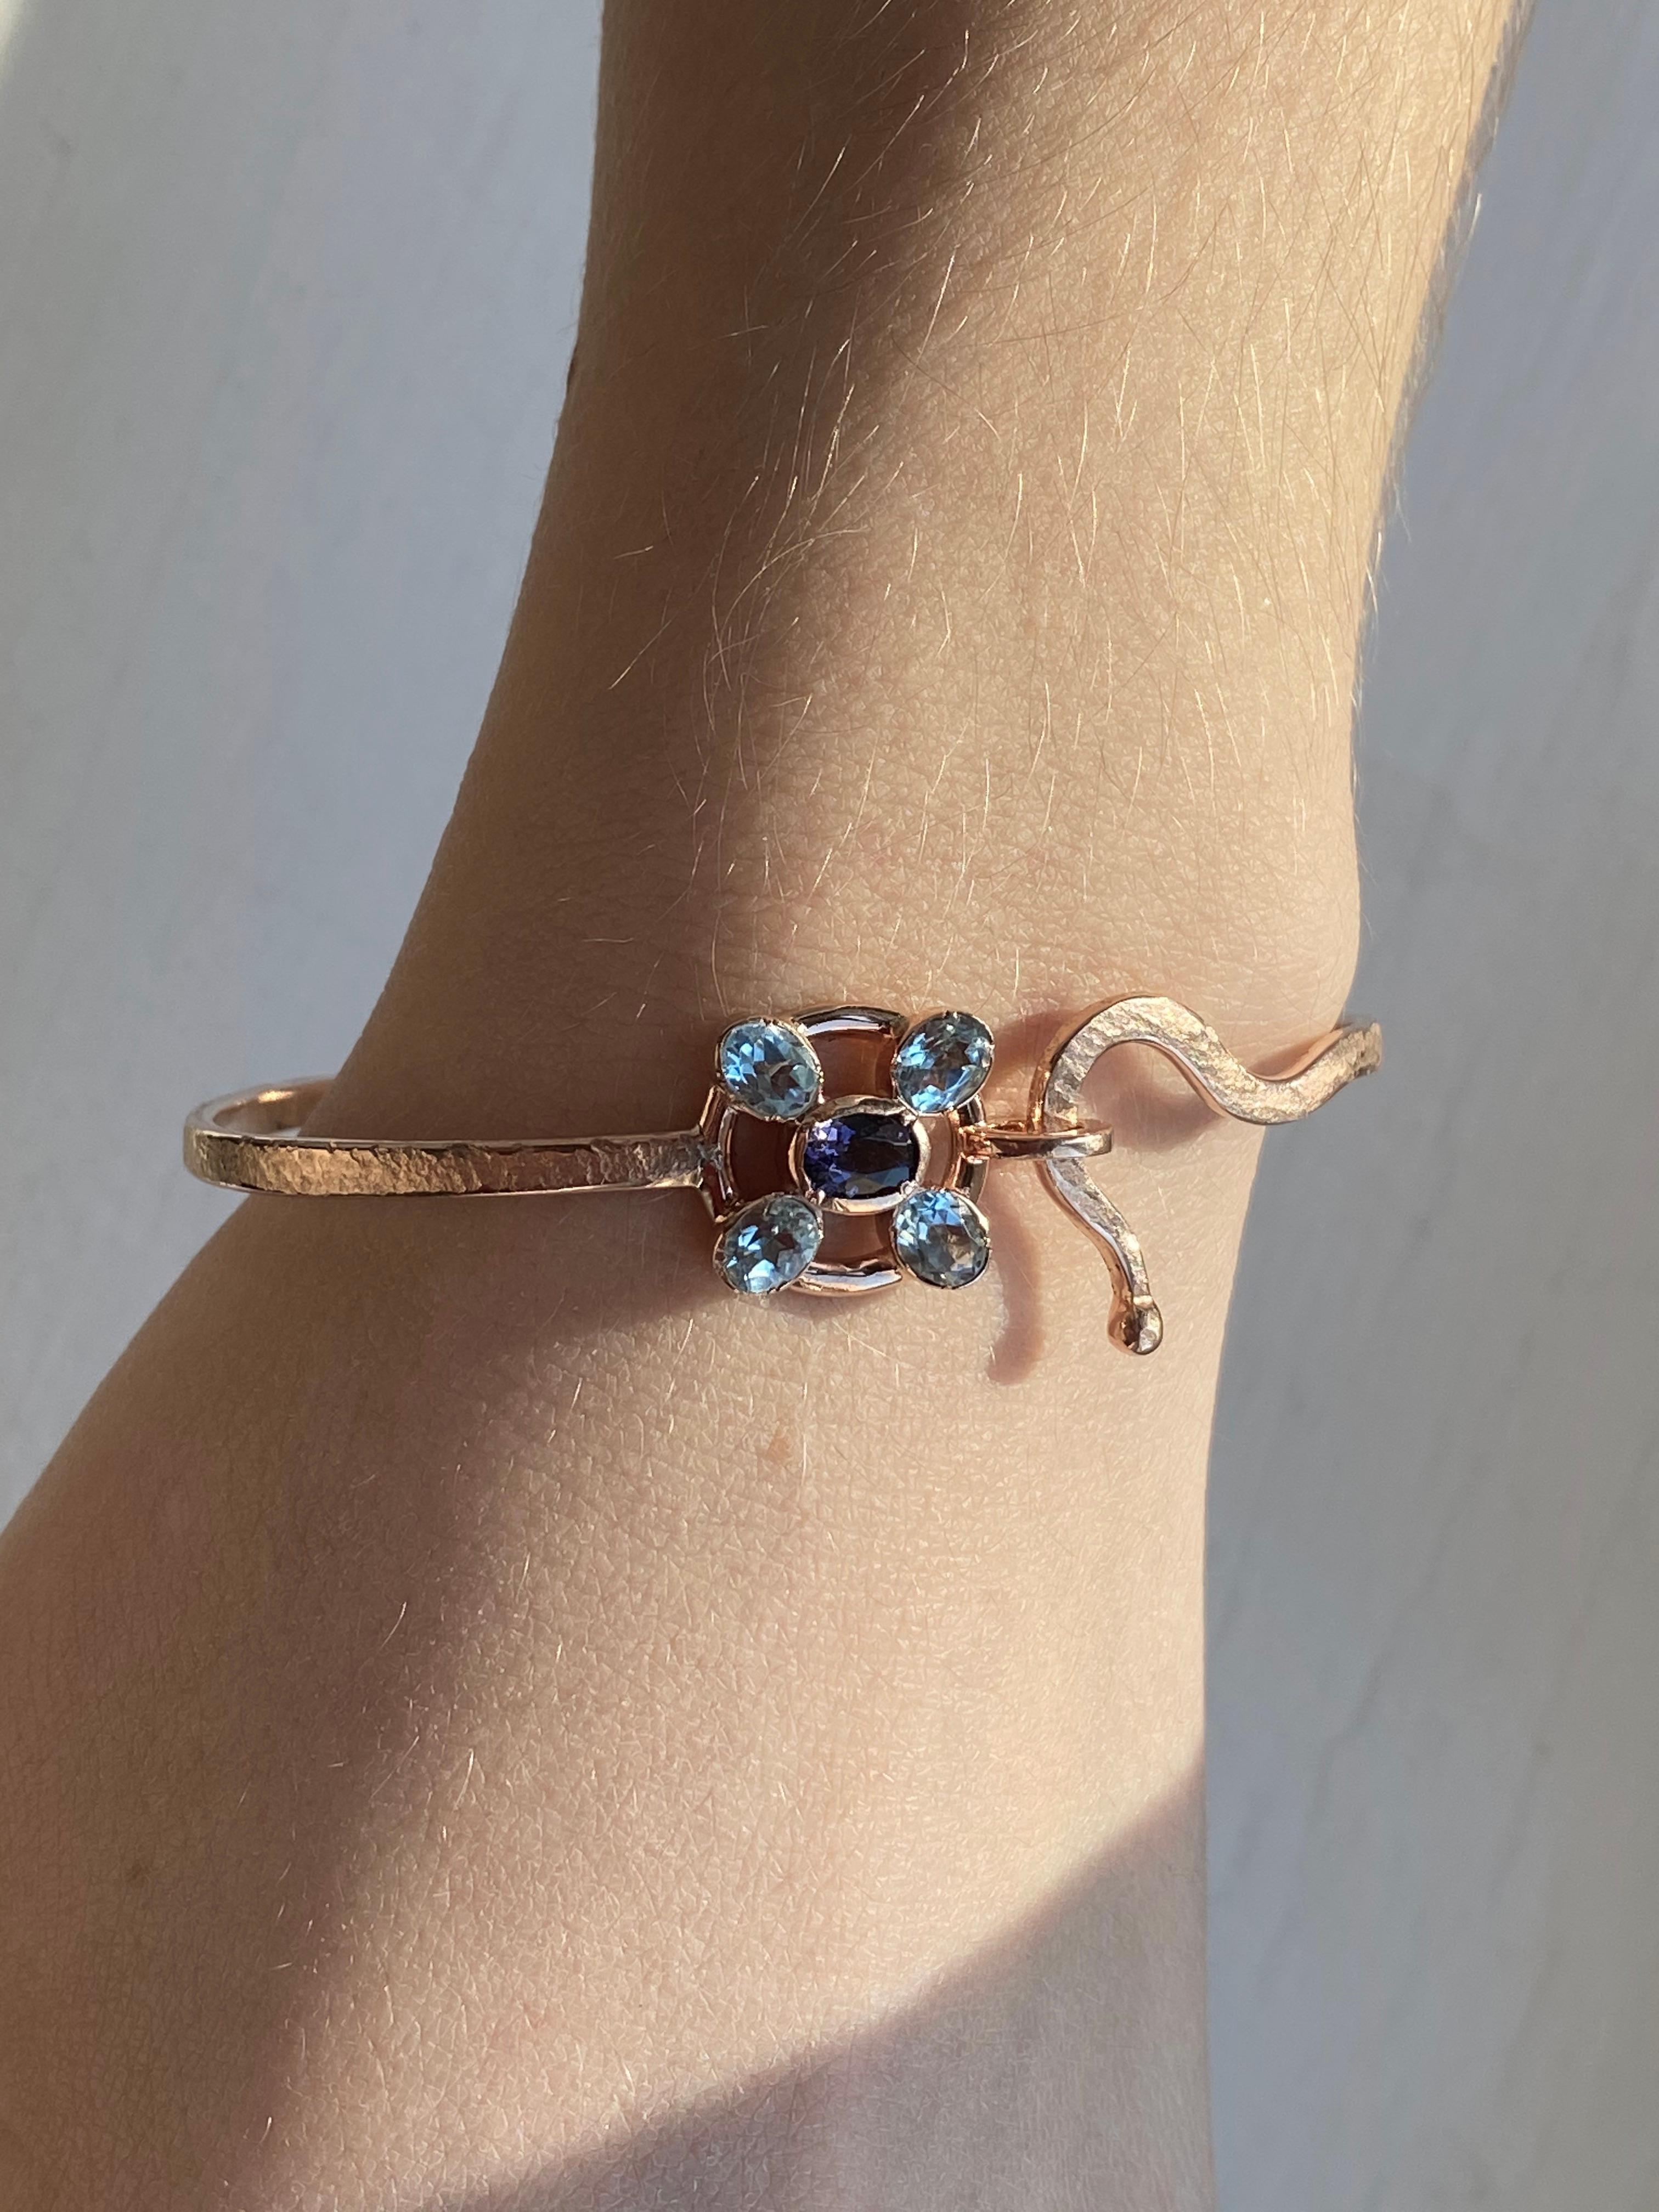 Die exquisite Rossella Ugolini Design Collection präsentiert ein wahres Meisterwerk der Juwelierskunst - das handgefertigte und gehämmerte Armband aus 18 Karat Roségold mit blauen Saphiren in modernem Design.  
Das mit Präzision gefertigte Armband